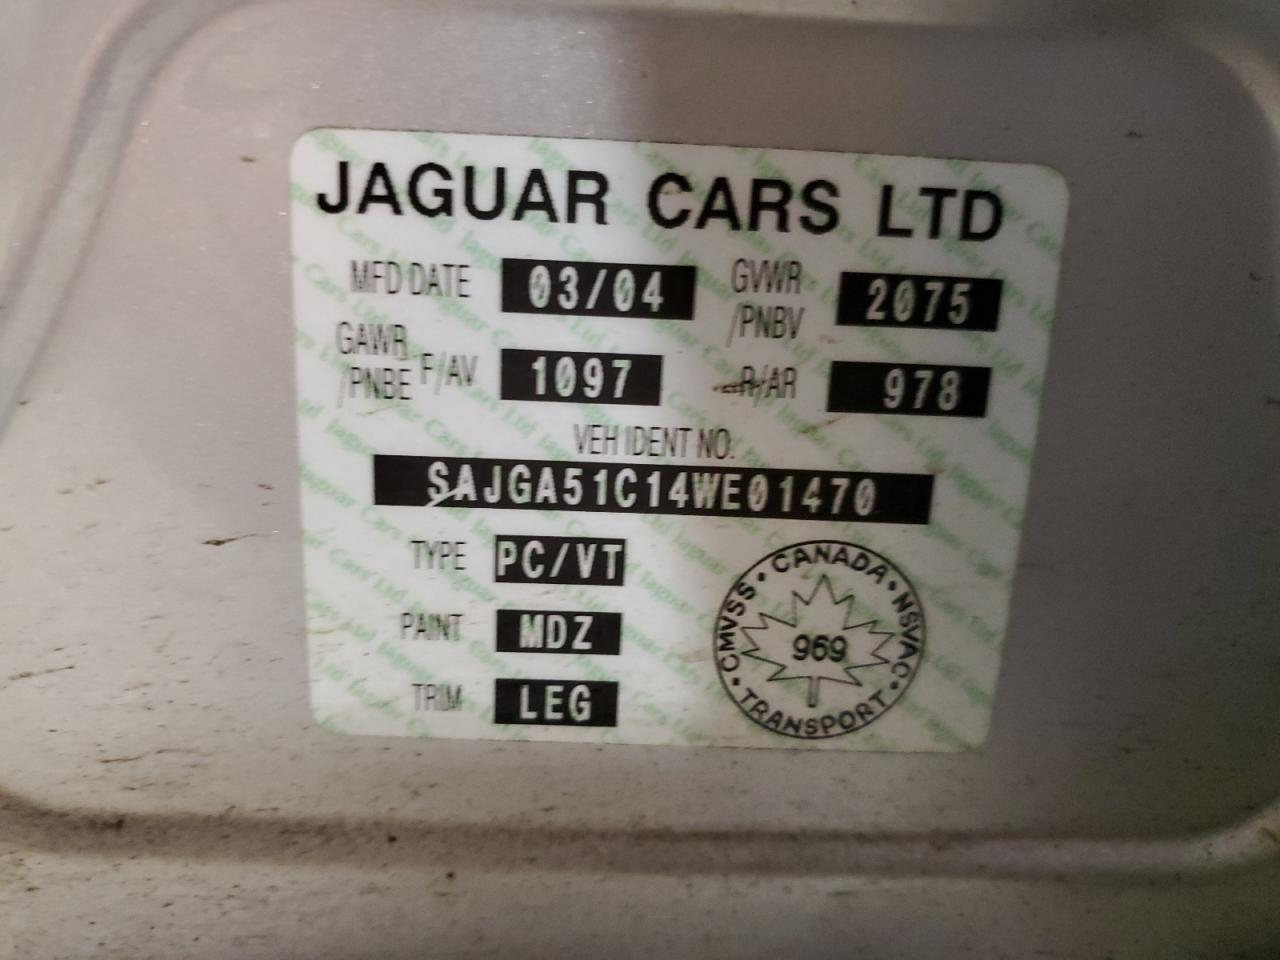 SAJGA51C14WE01470 2004 Jaguar X-Type 3.0